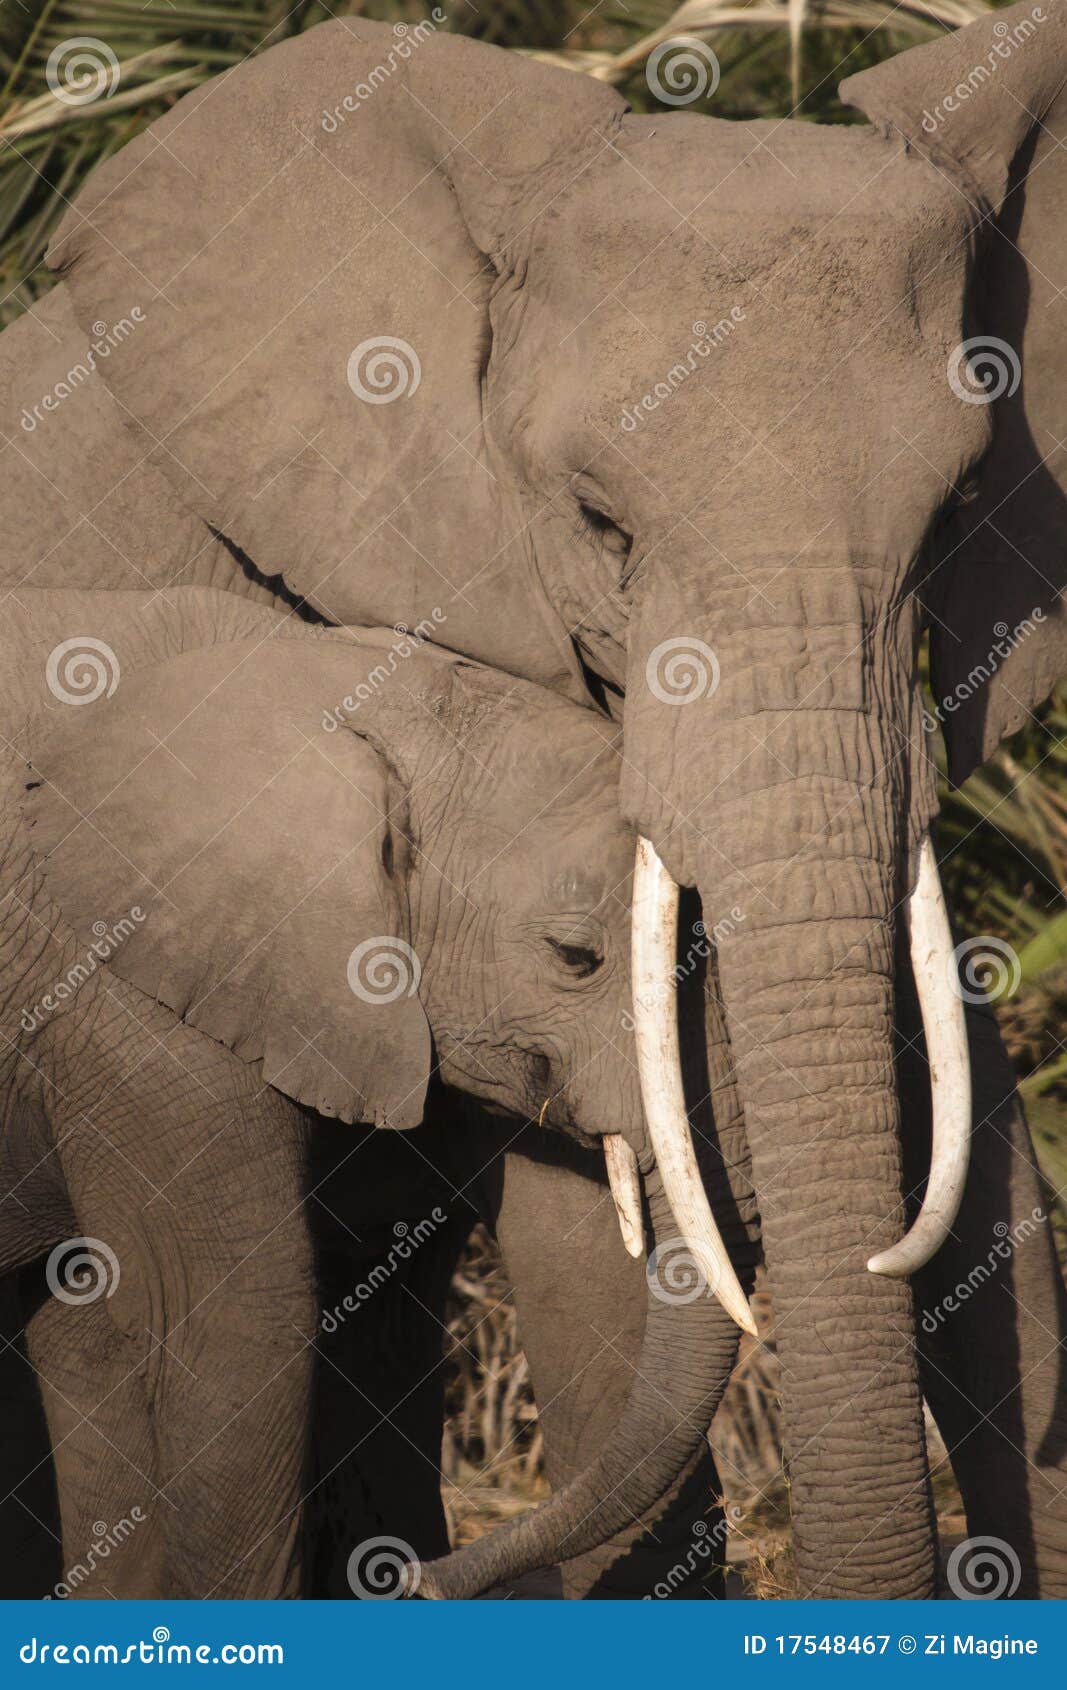 elephant loxodonta africana